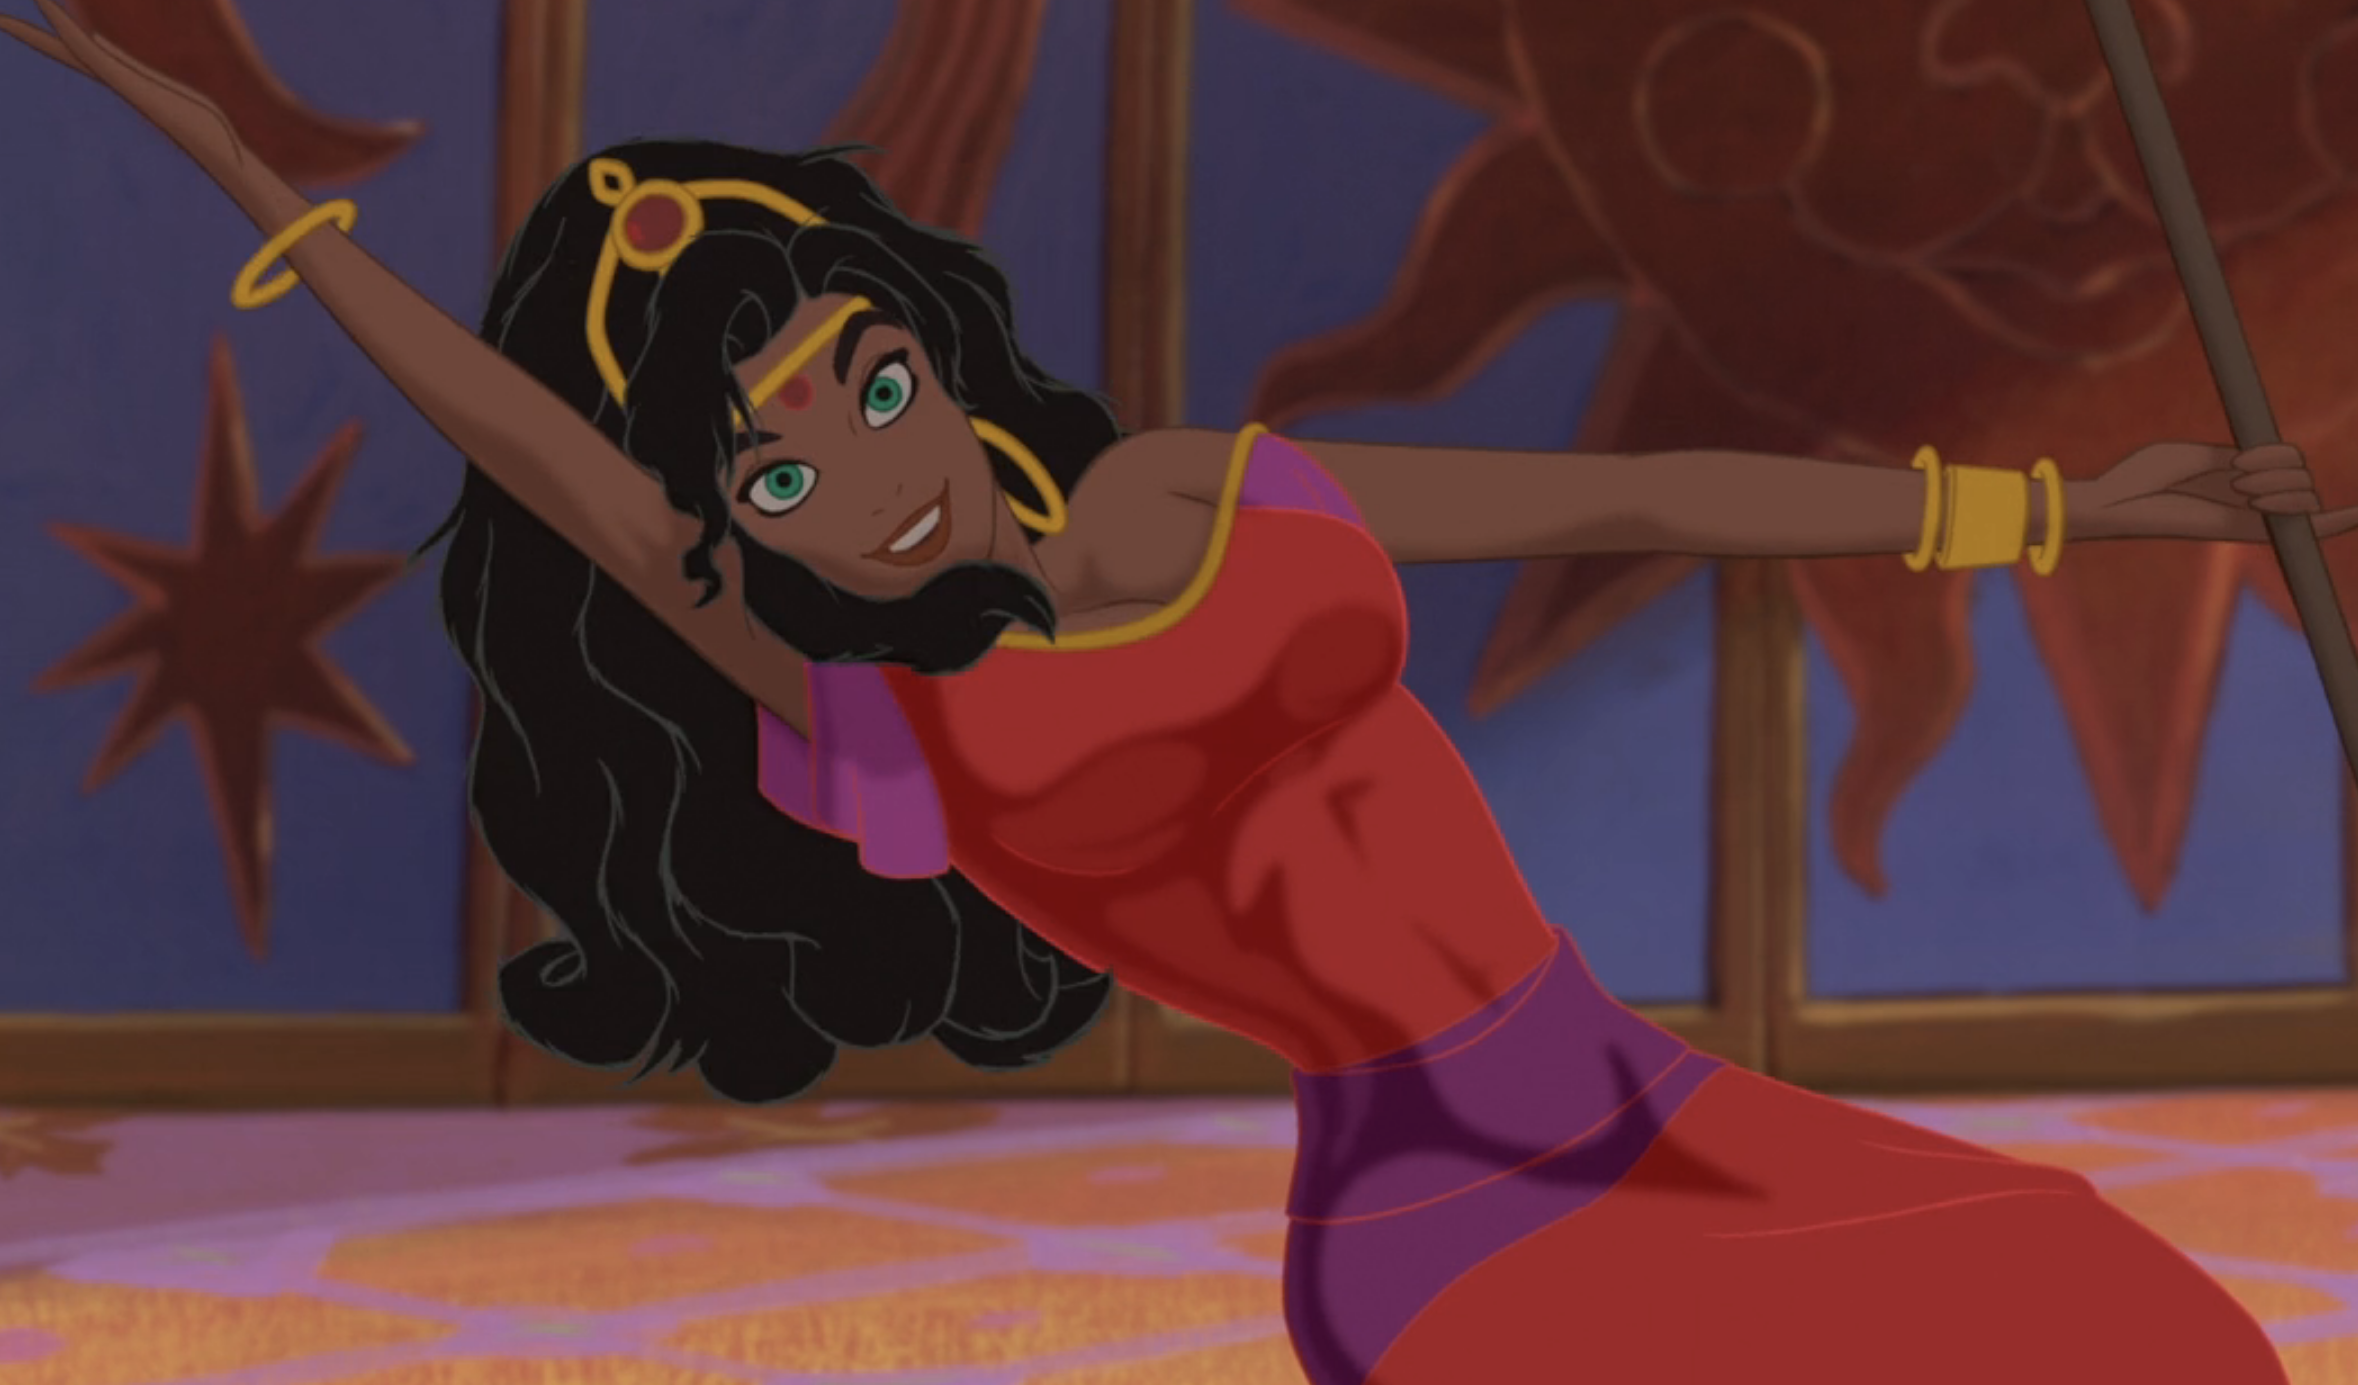 Esmeralda dancing